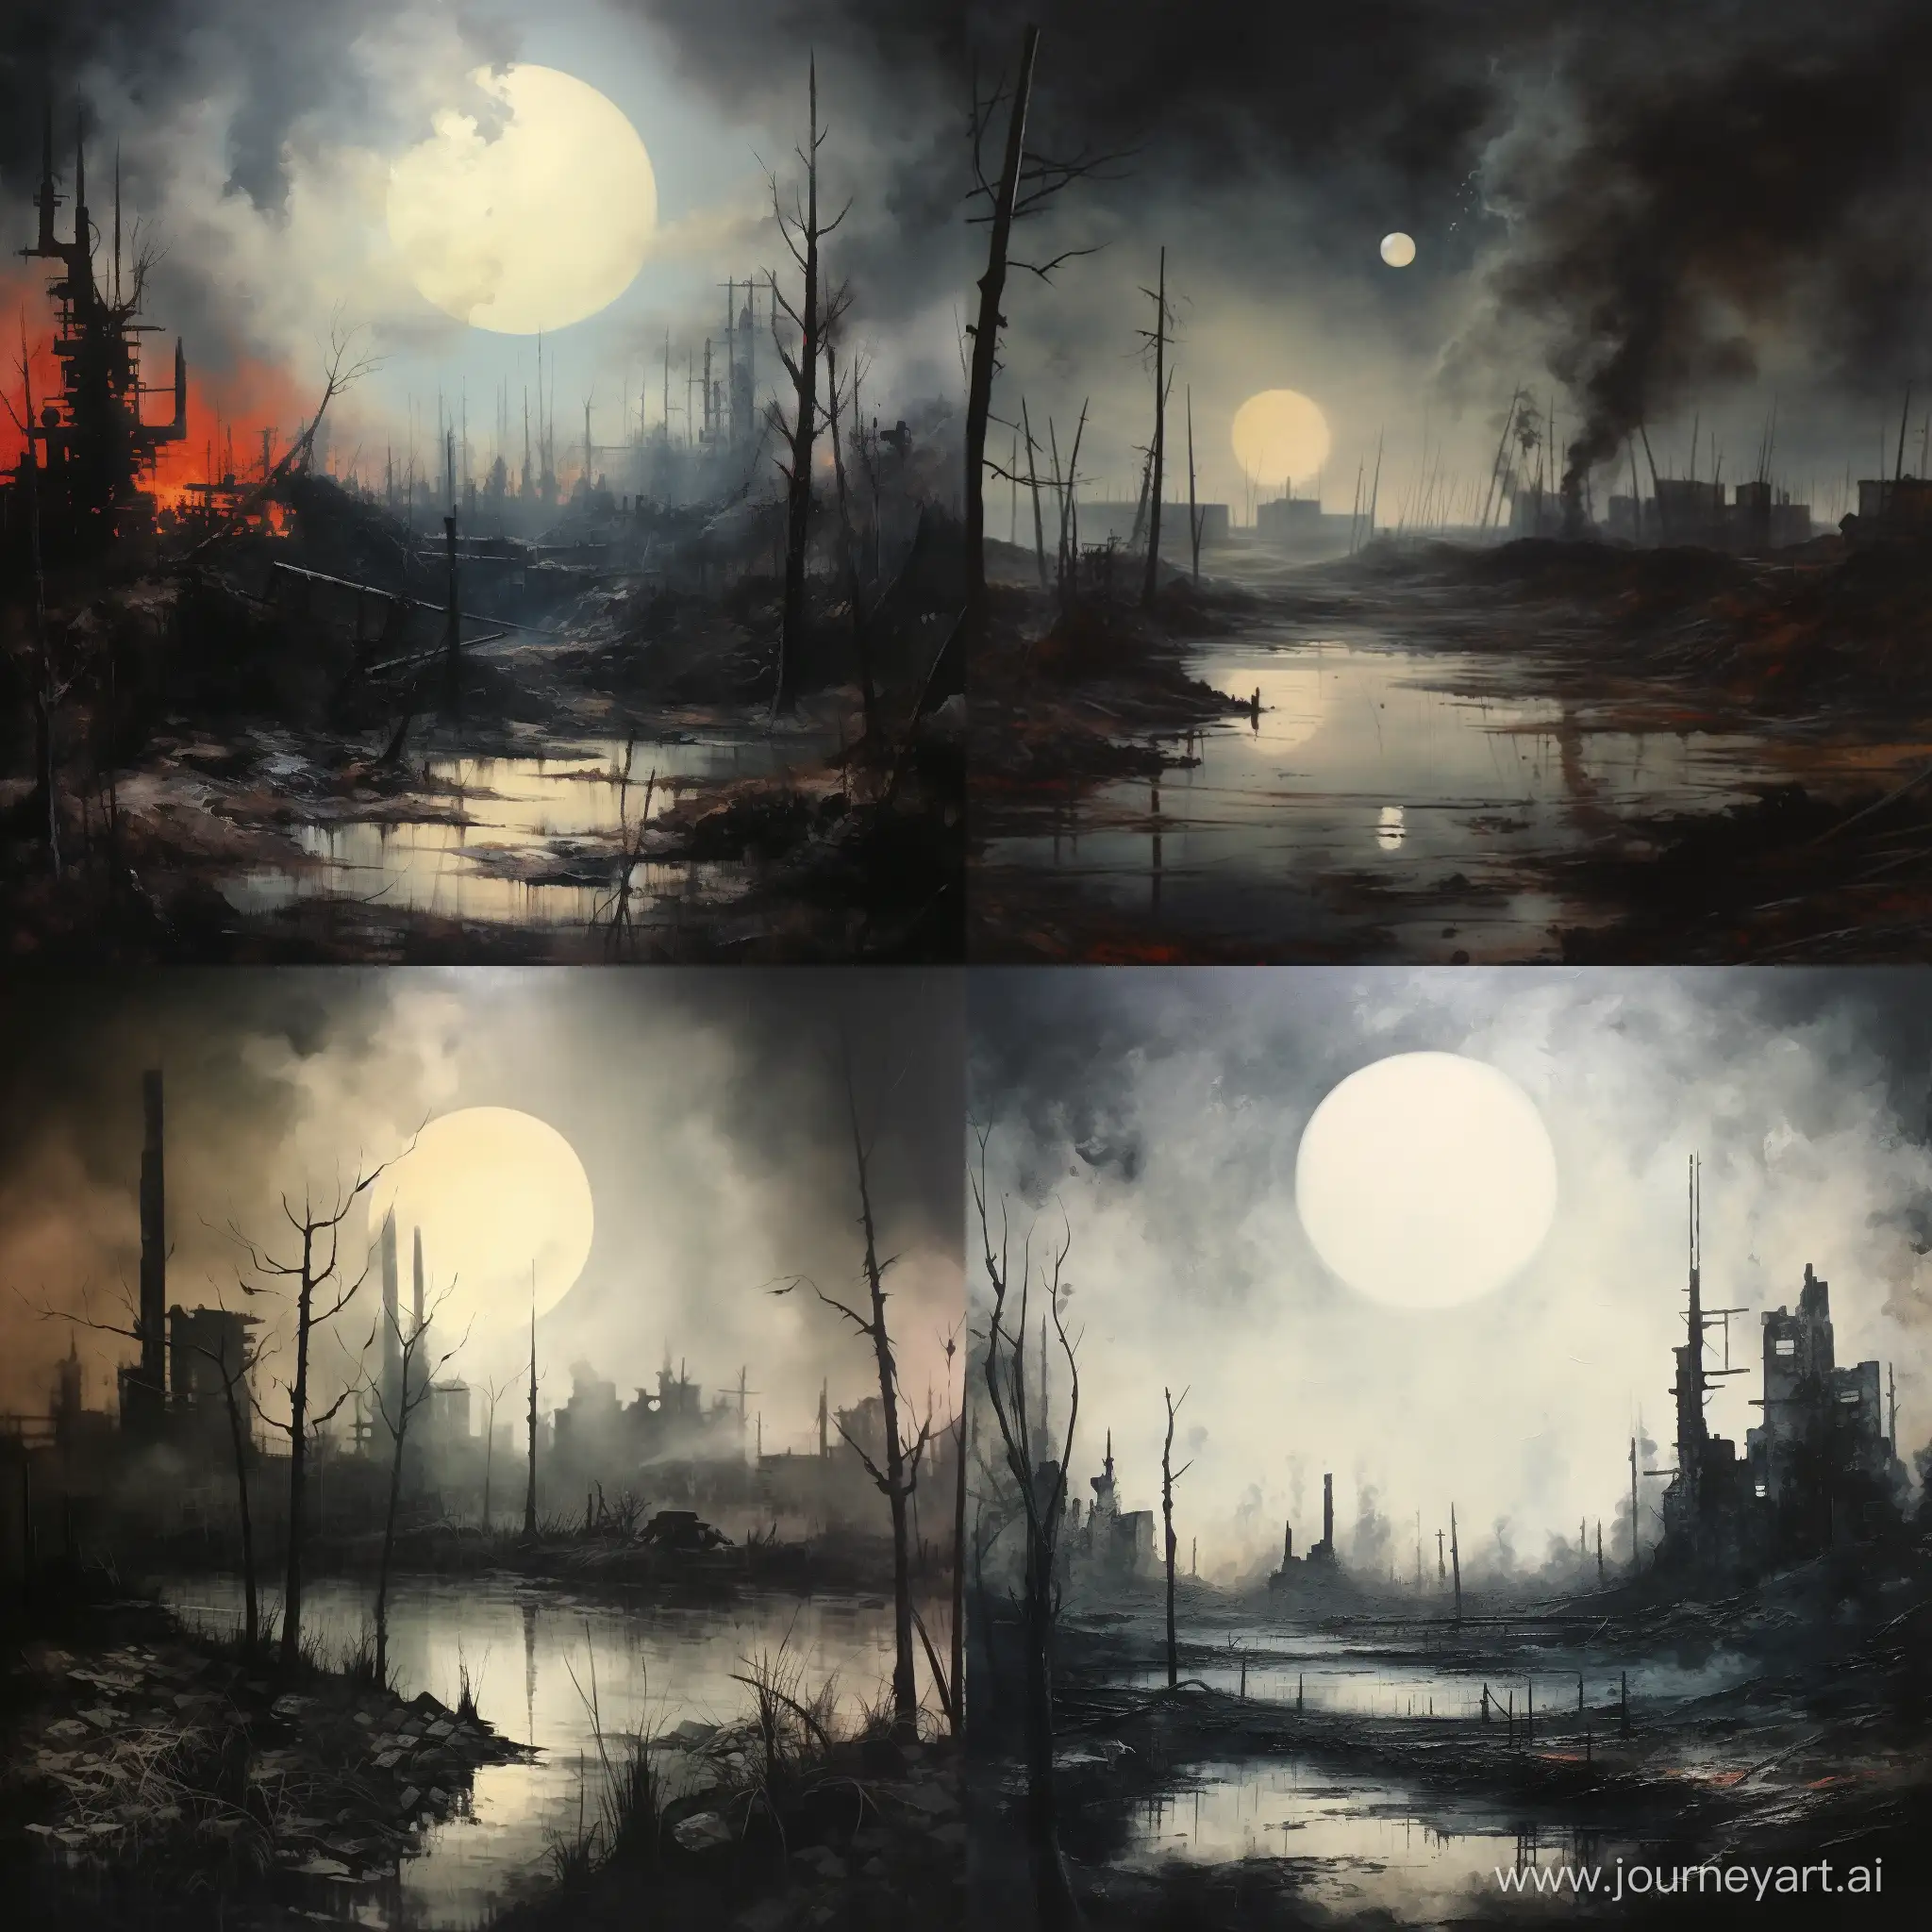 индустриальный разрушенный пейзаж, заброшенные заводы, туман и дым, две луны в небе, реализм